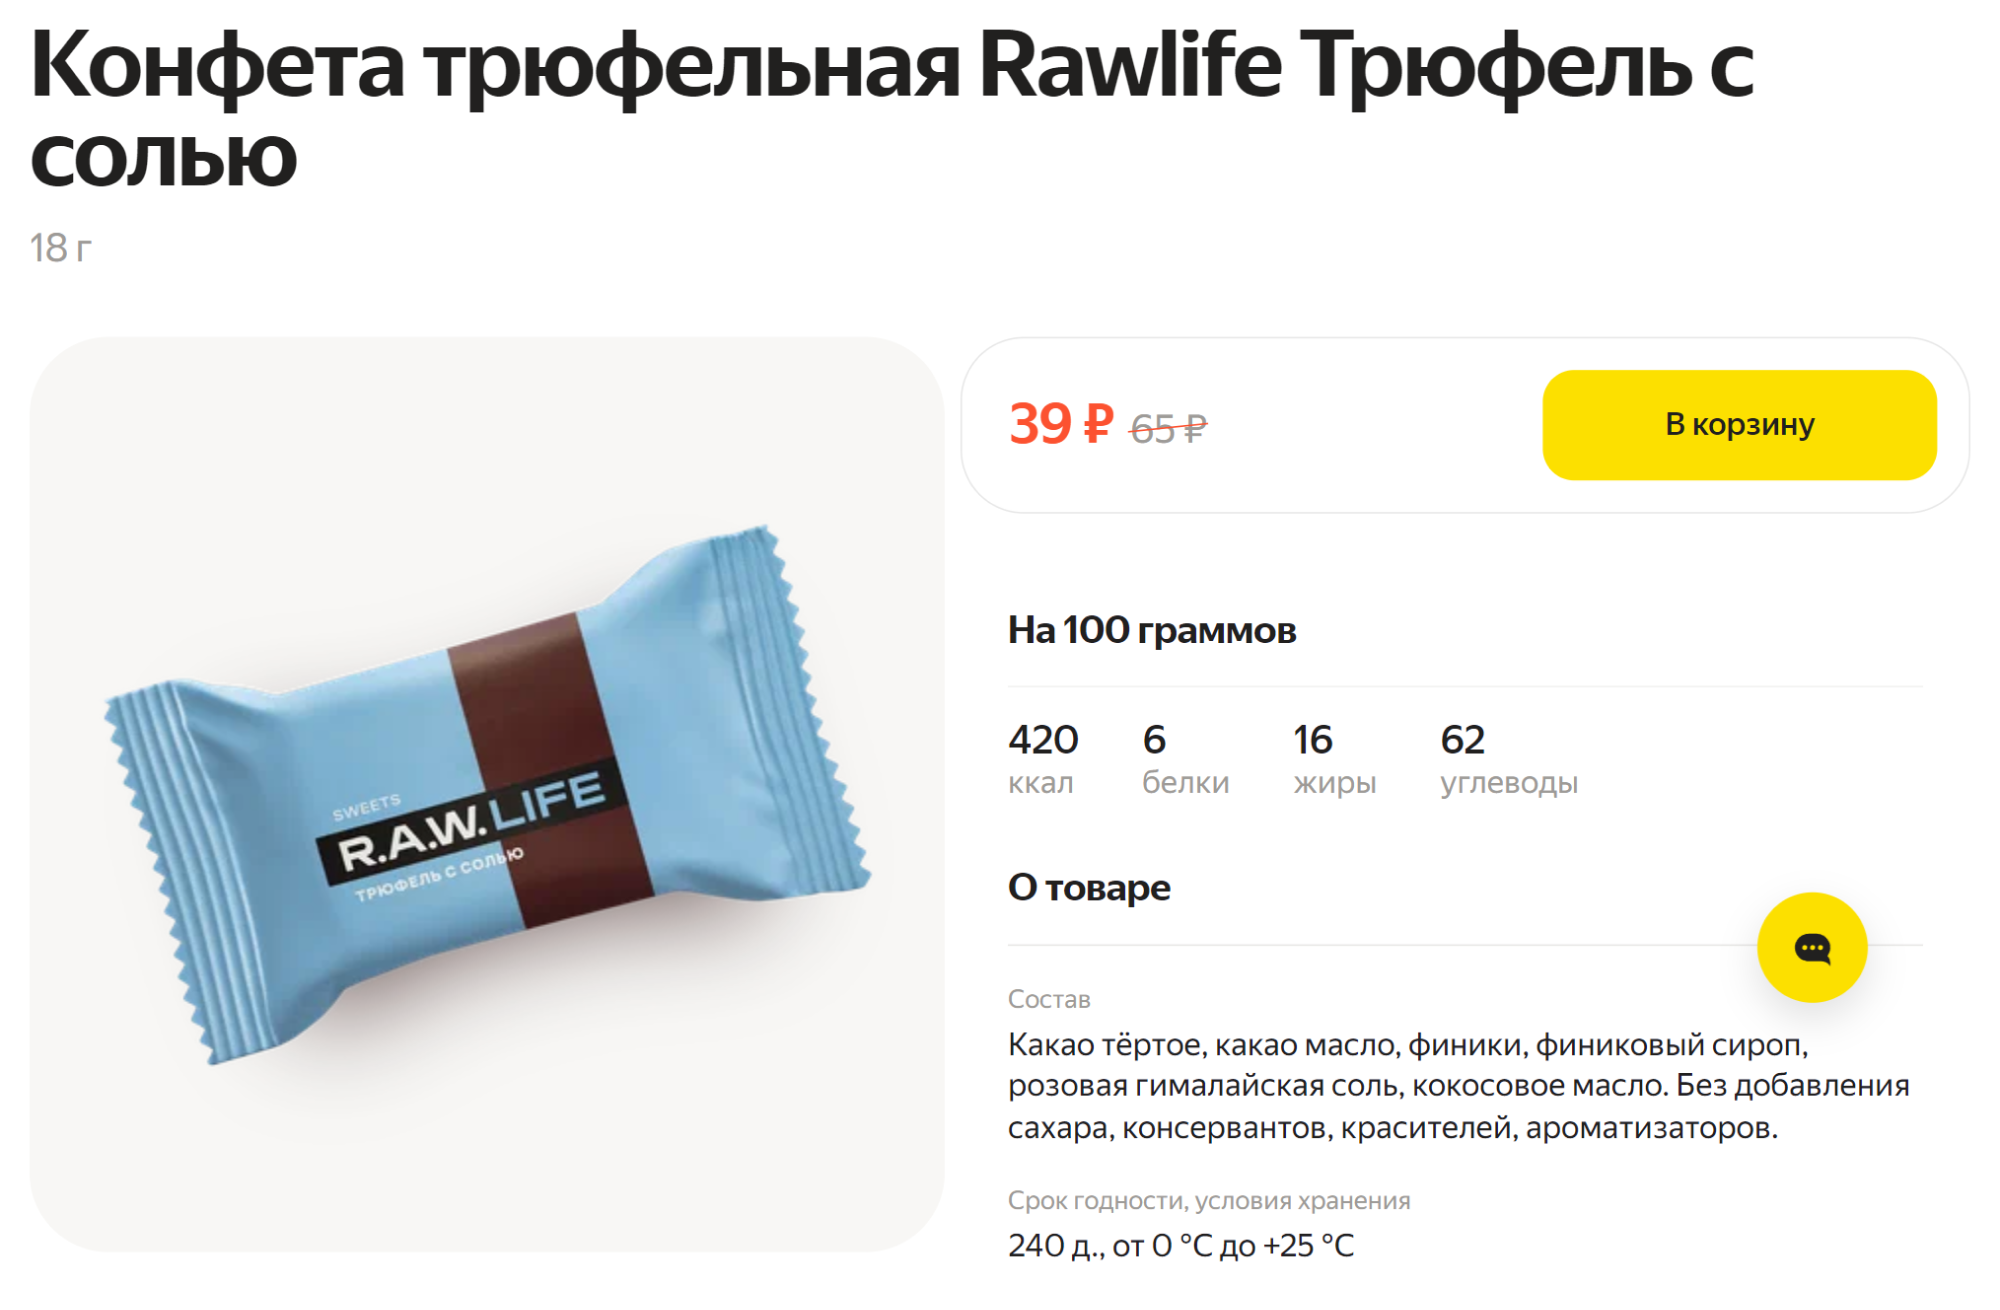 В этой конфете финики и гималайская соль — необычно и не приторно. Источник: lavka.yandex.ru